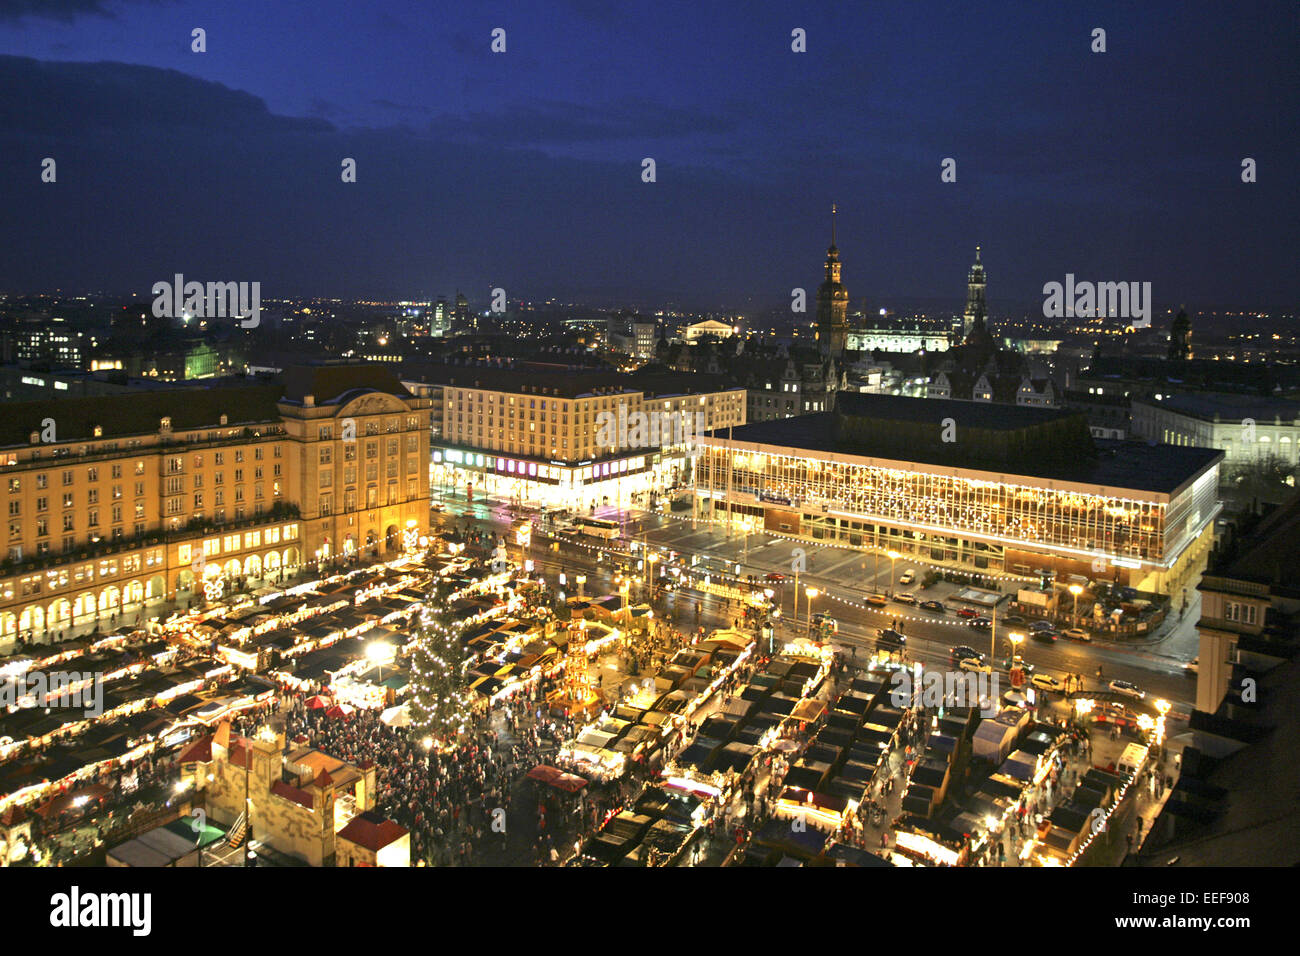 Deutschland Dresden Strietzelmarkt Uebersicht Verkaufsstaende Staende Nacht aussen beleuchtet Sachsen Adventszeit Weihnachtszeit Stock Photo